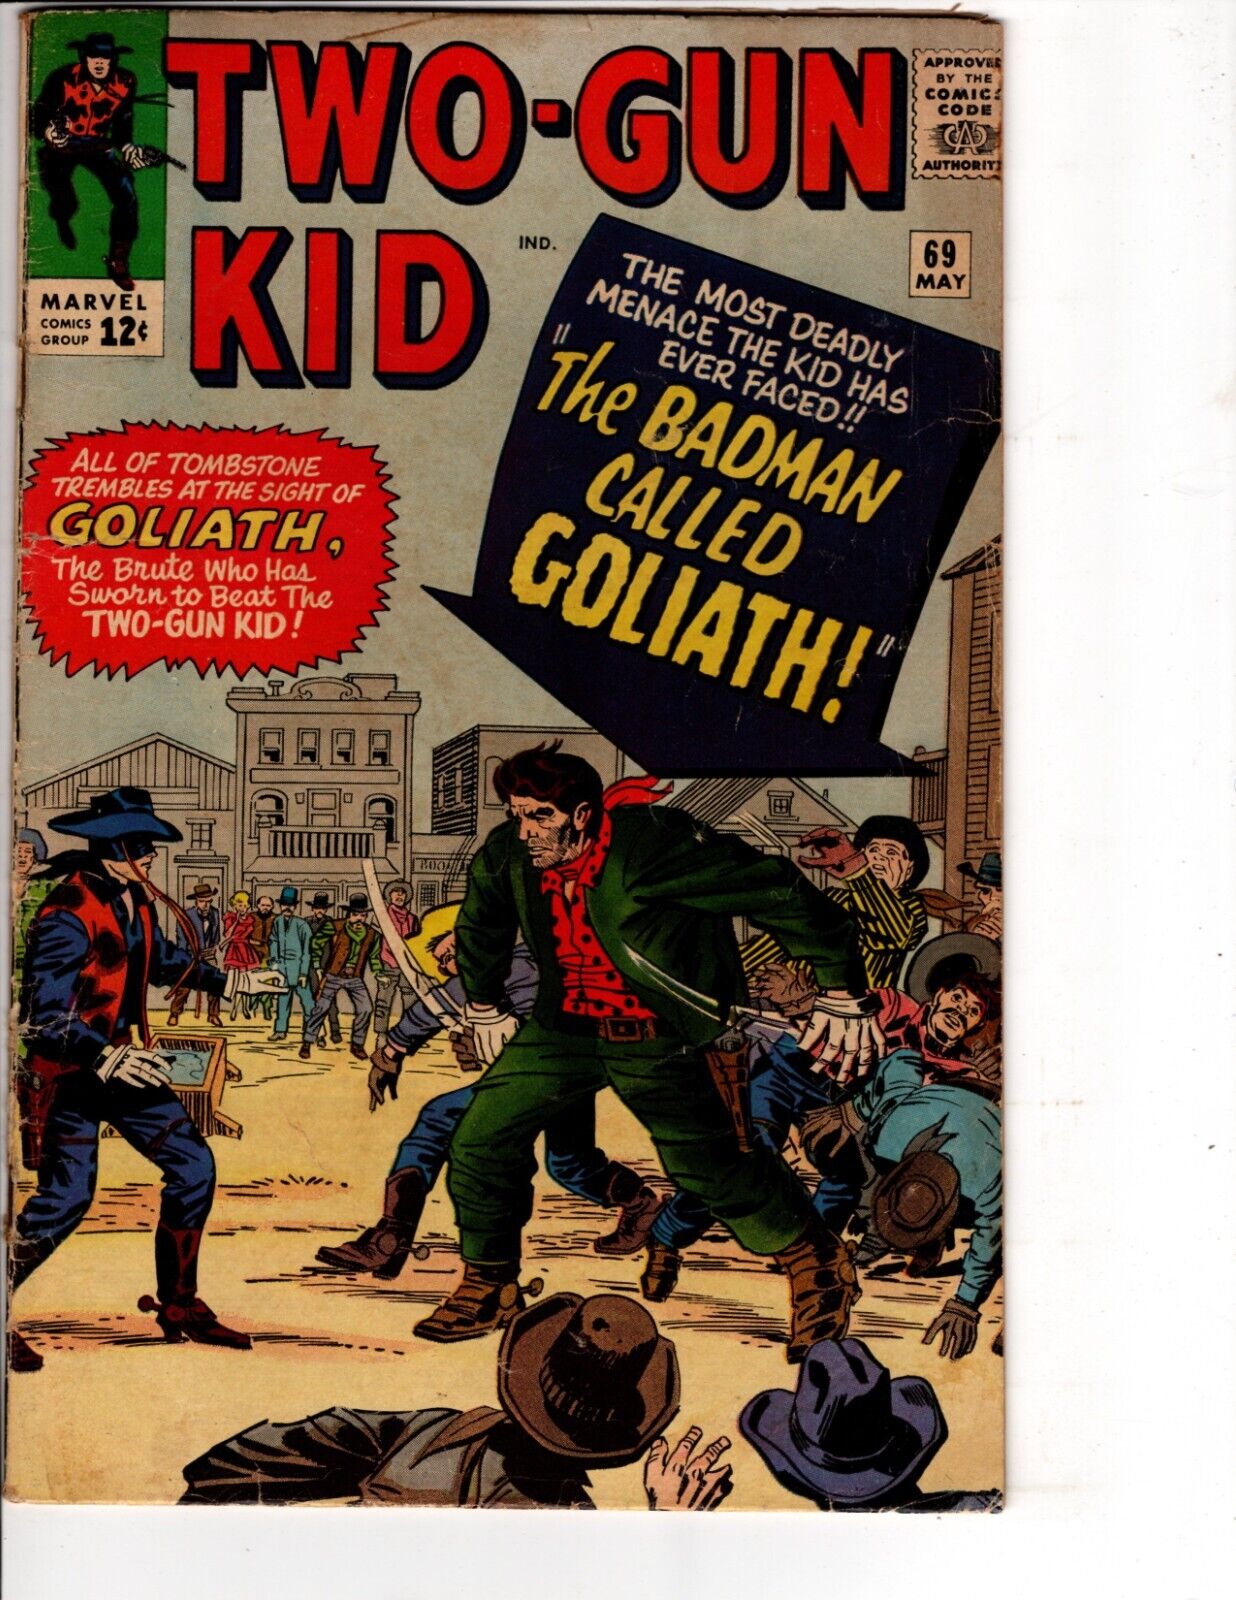 Two-Gun Kid #69 Western Comic Book Marvel 1964 Stan Lee / Dick Ayers